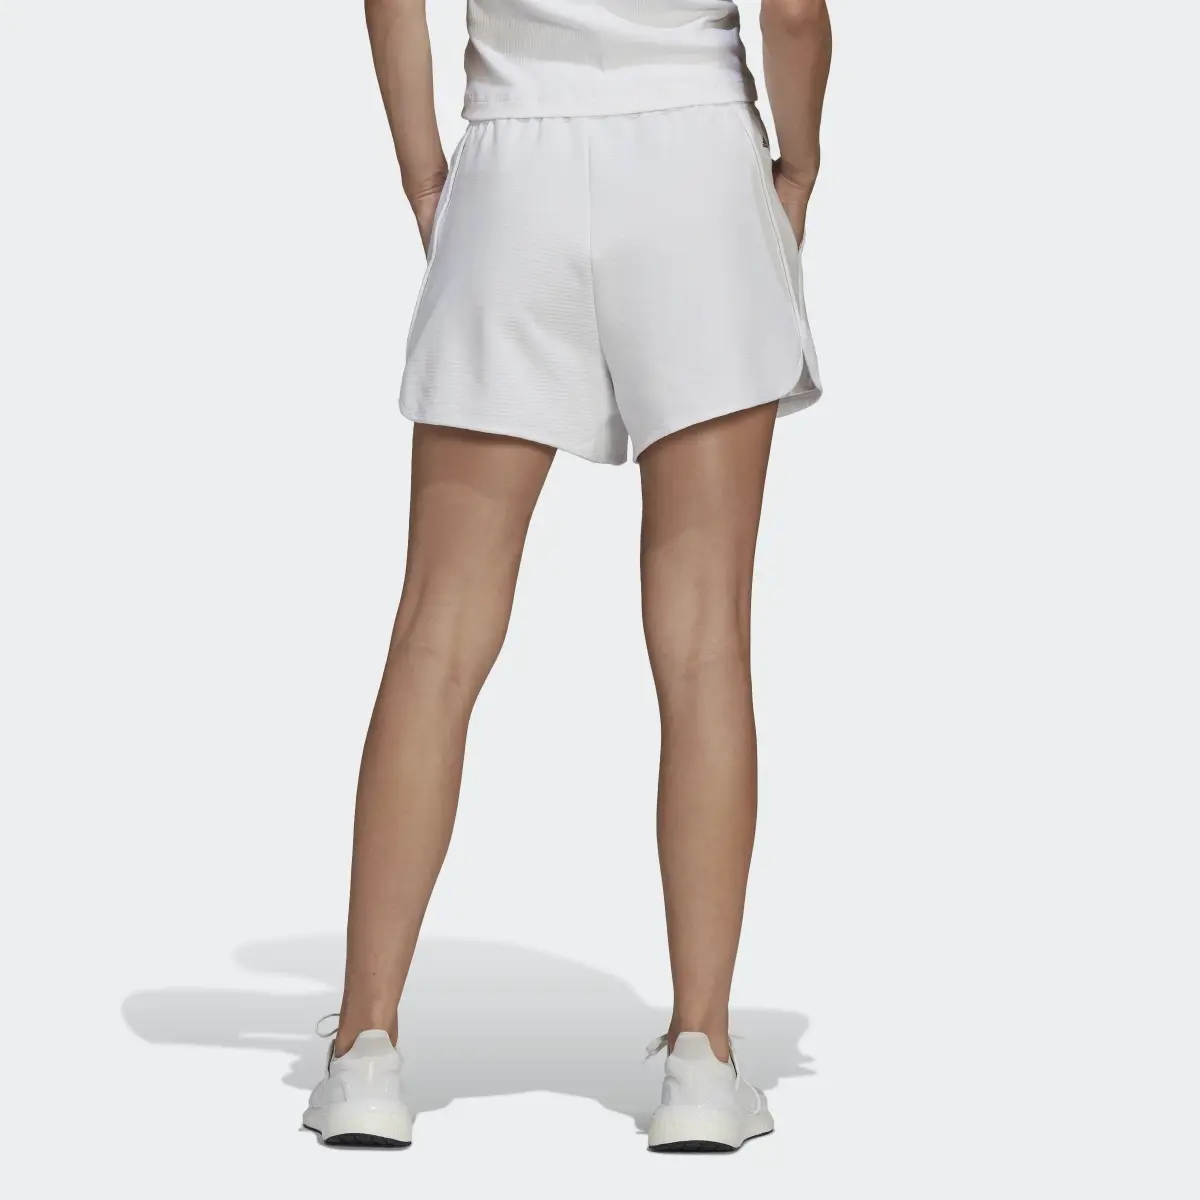 Adidas Pantalón corto Karlie Kloss x adidas. 2